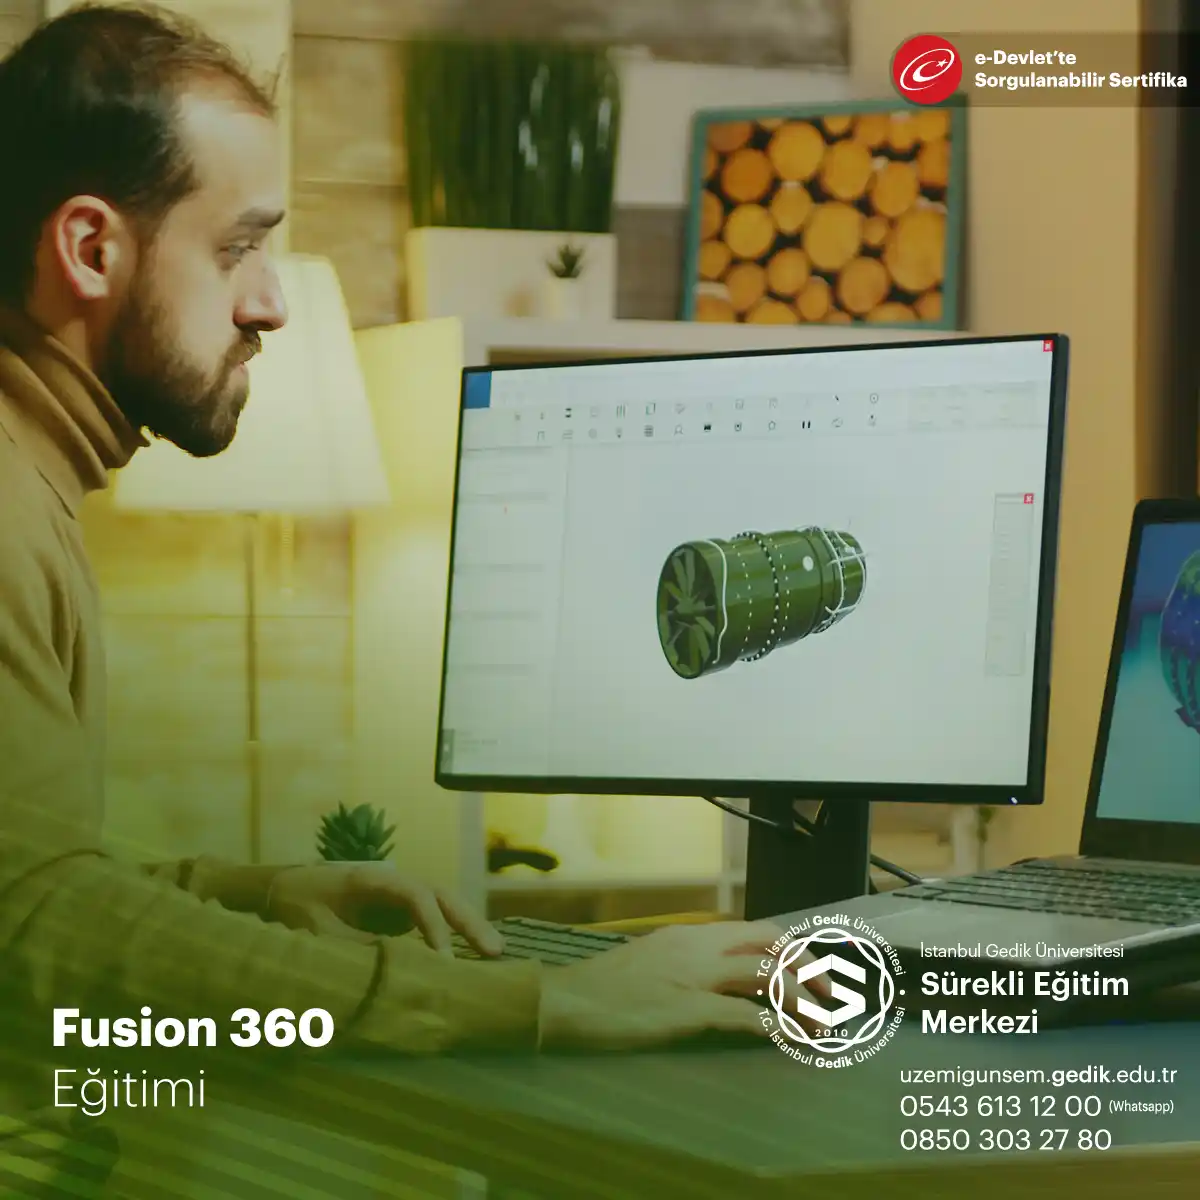 Fusion 360 Eğitimi (Temel ve İleri Seviye Tasarım İle Render) Sertifika Programı